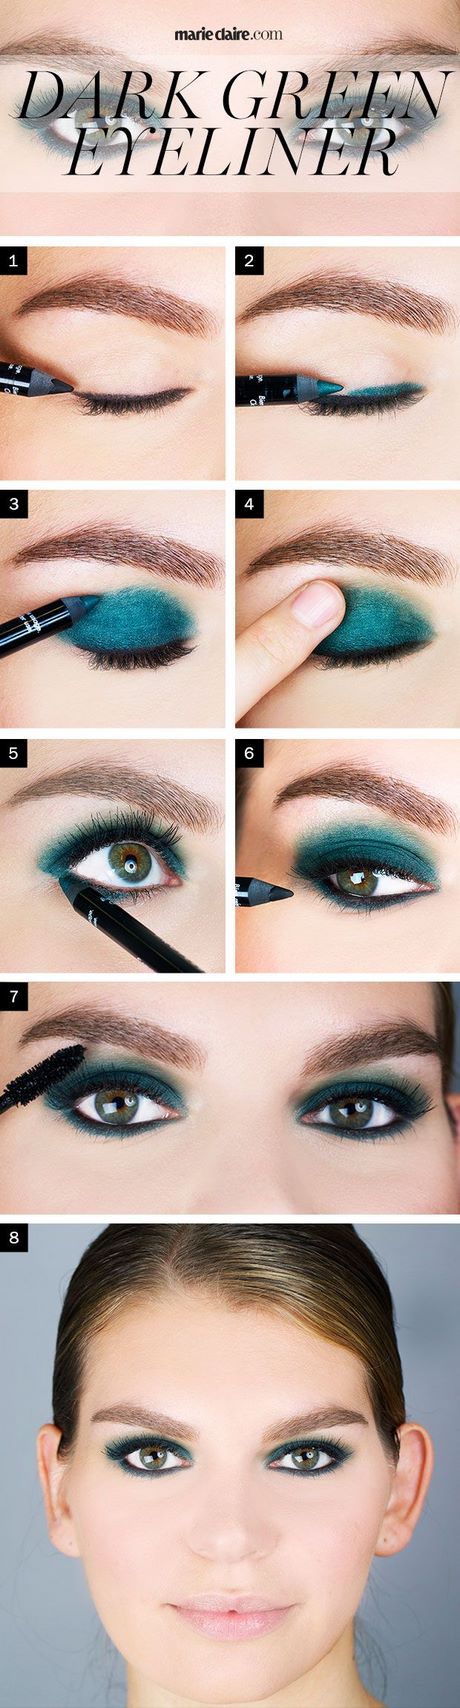 dark-eye-makeup-tutorial-for-green-eyes-06_6 Dark eye make - up tutorial voor groene ogen